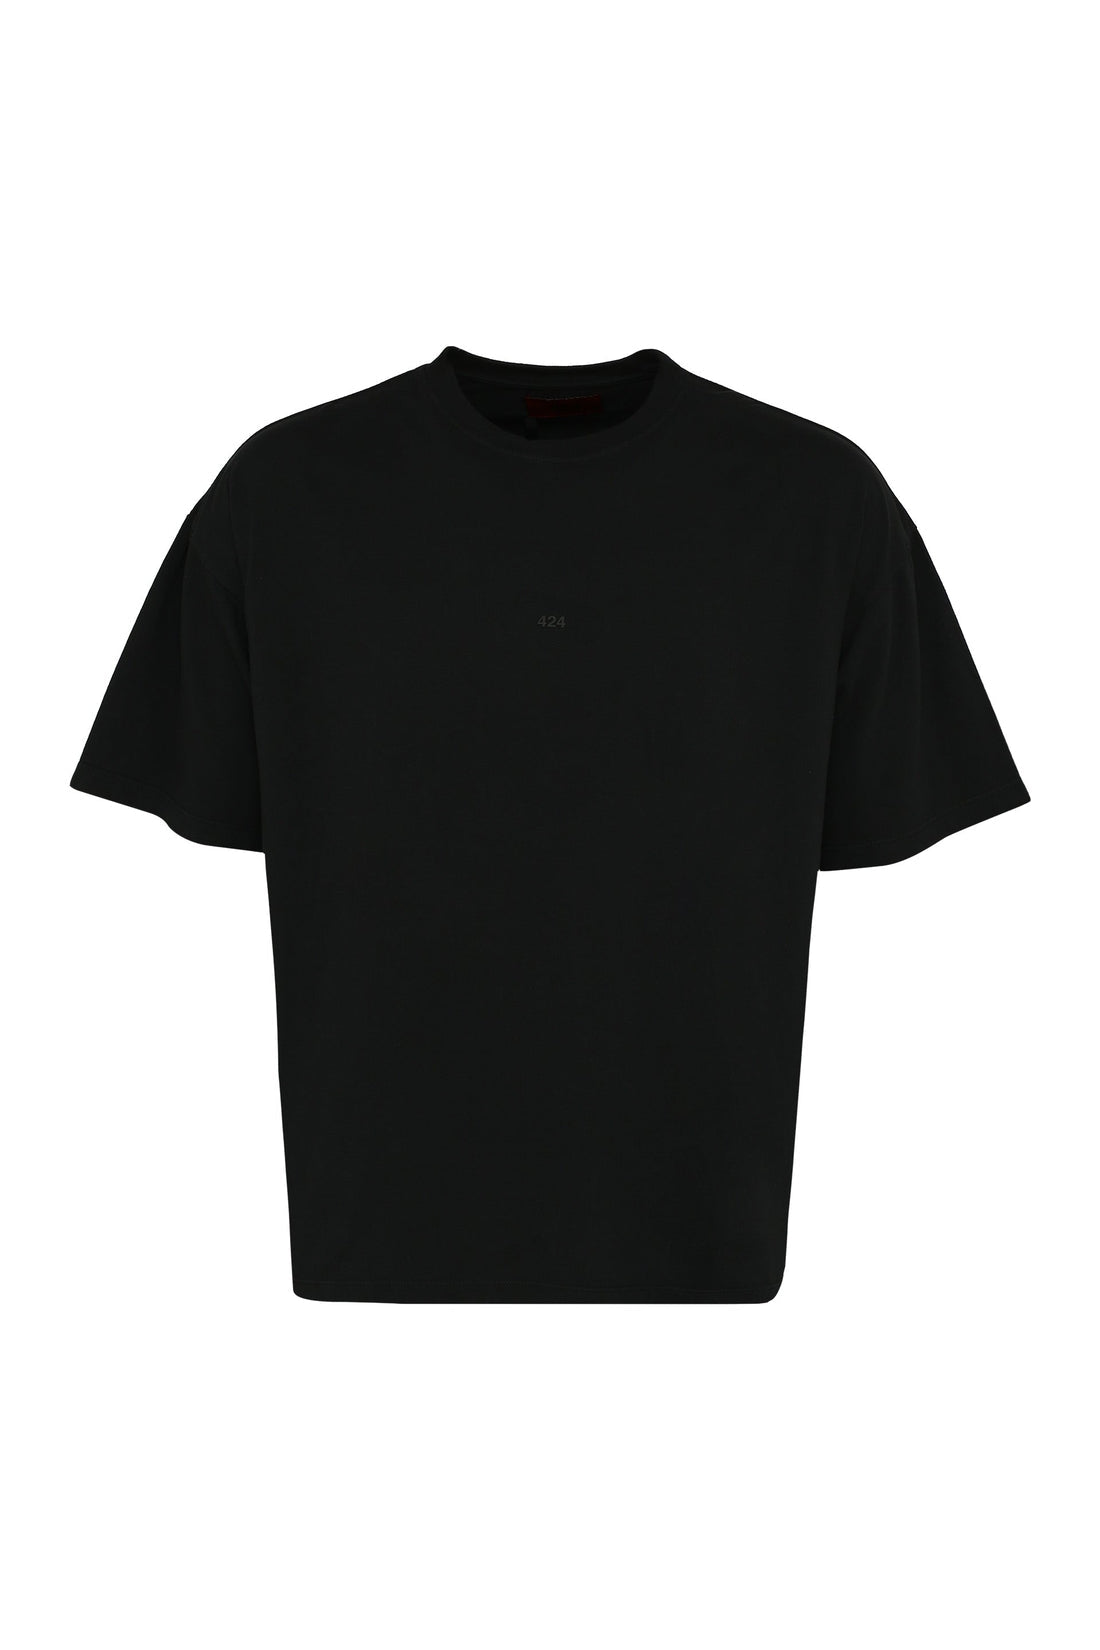 424-OUTLET-SALE-Logo print cotton t-shirt-ARCHIVIST